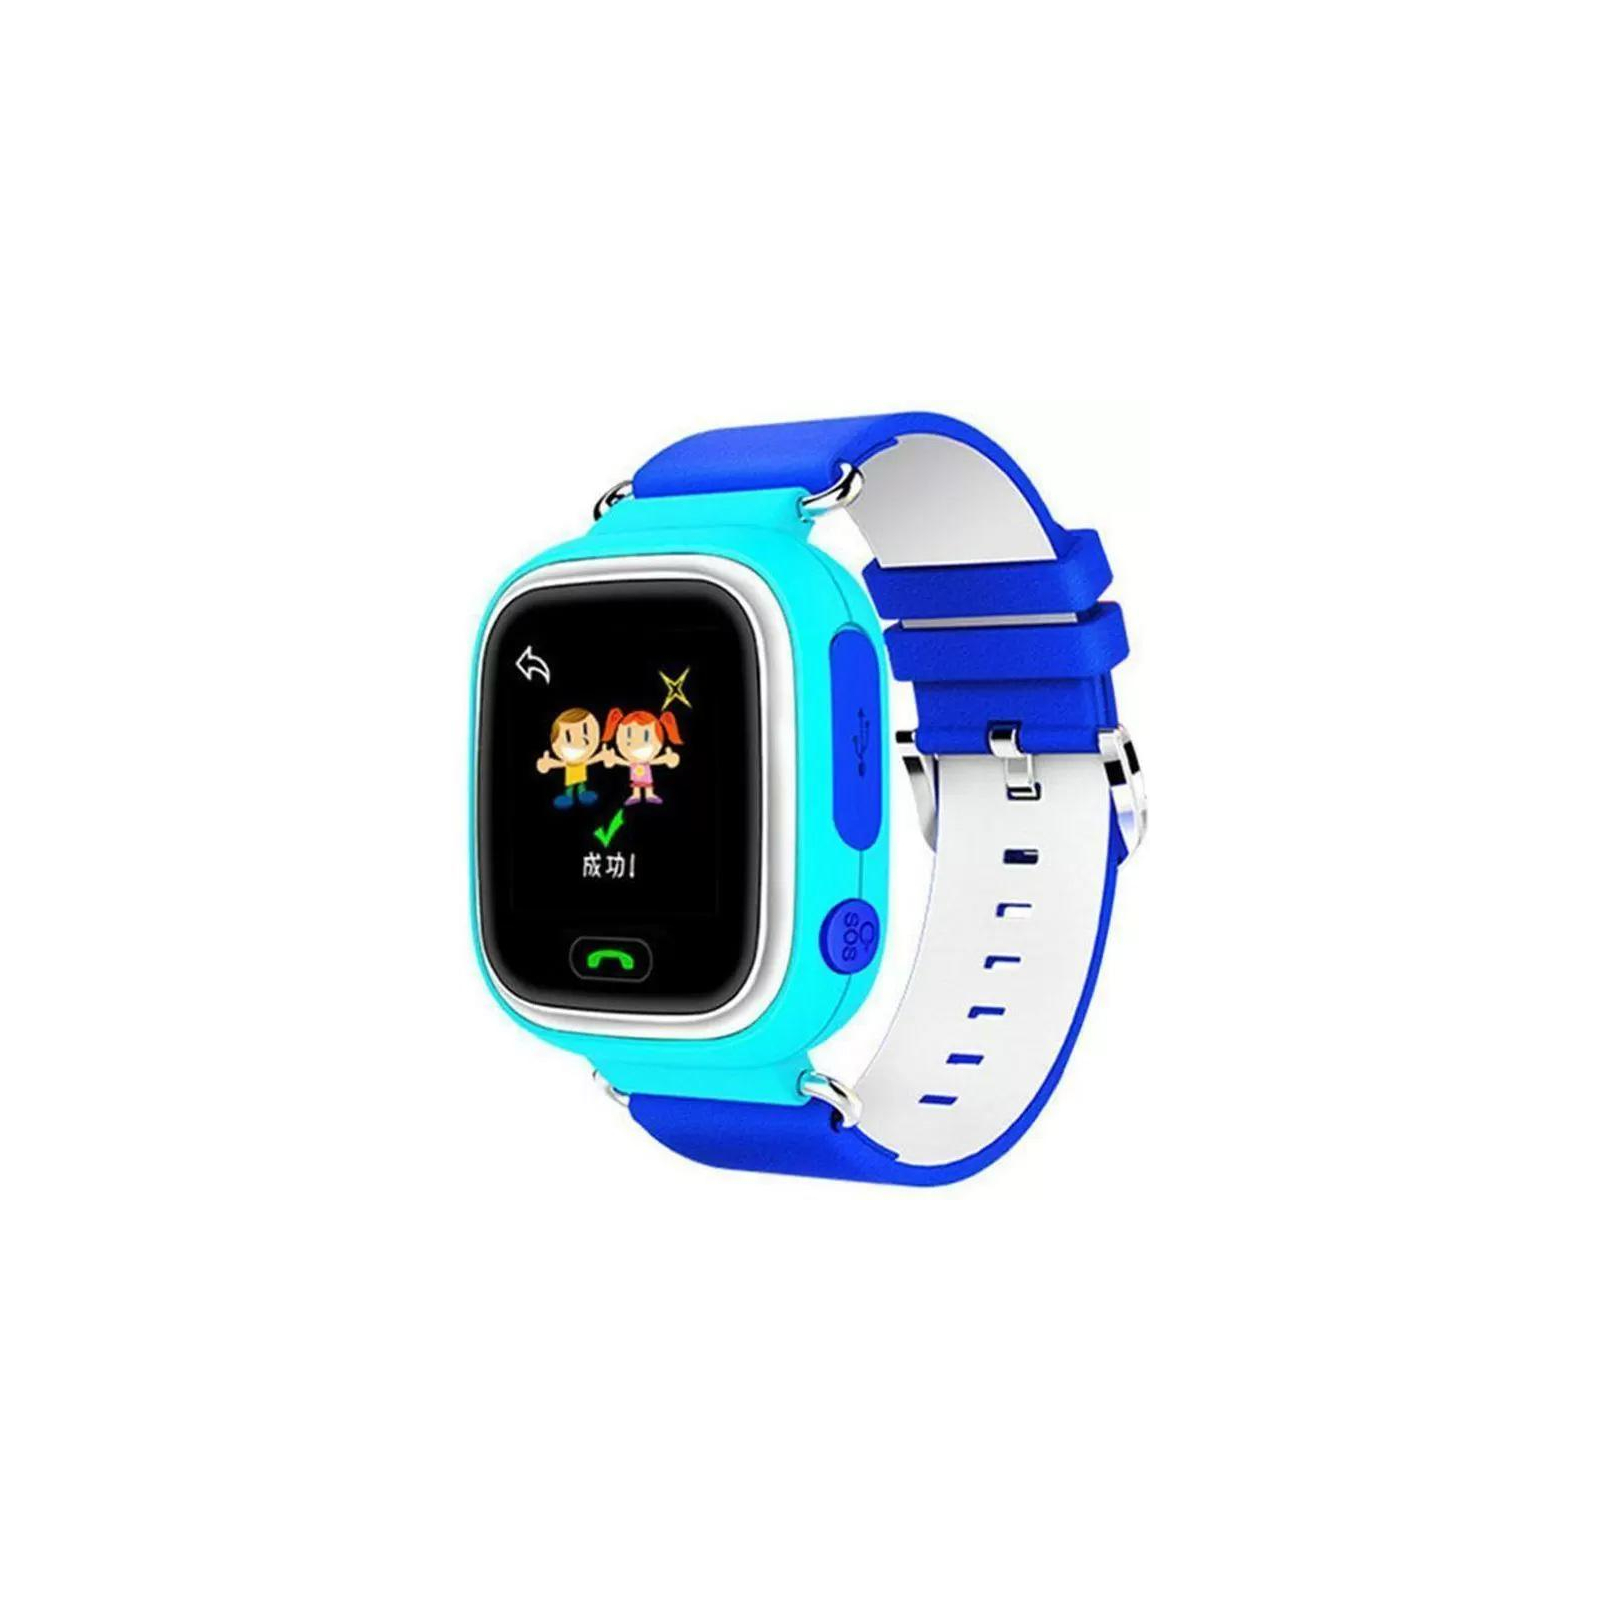 Смарт-годинник UWatch Q90 Kid smart watch Orange (F_47454)